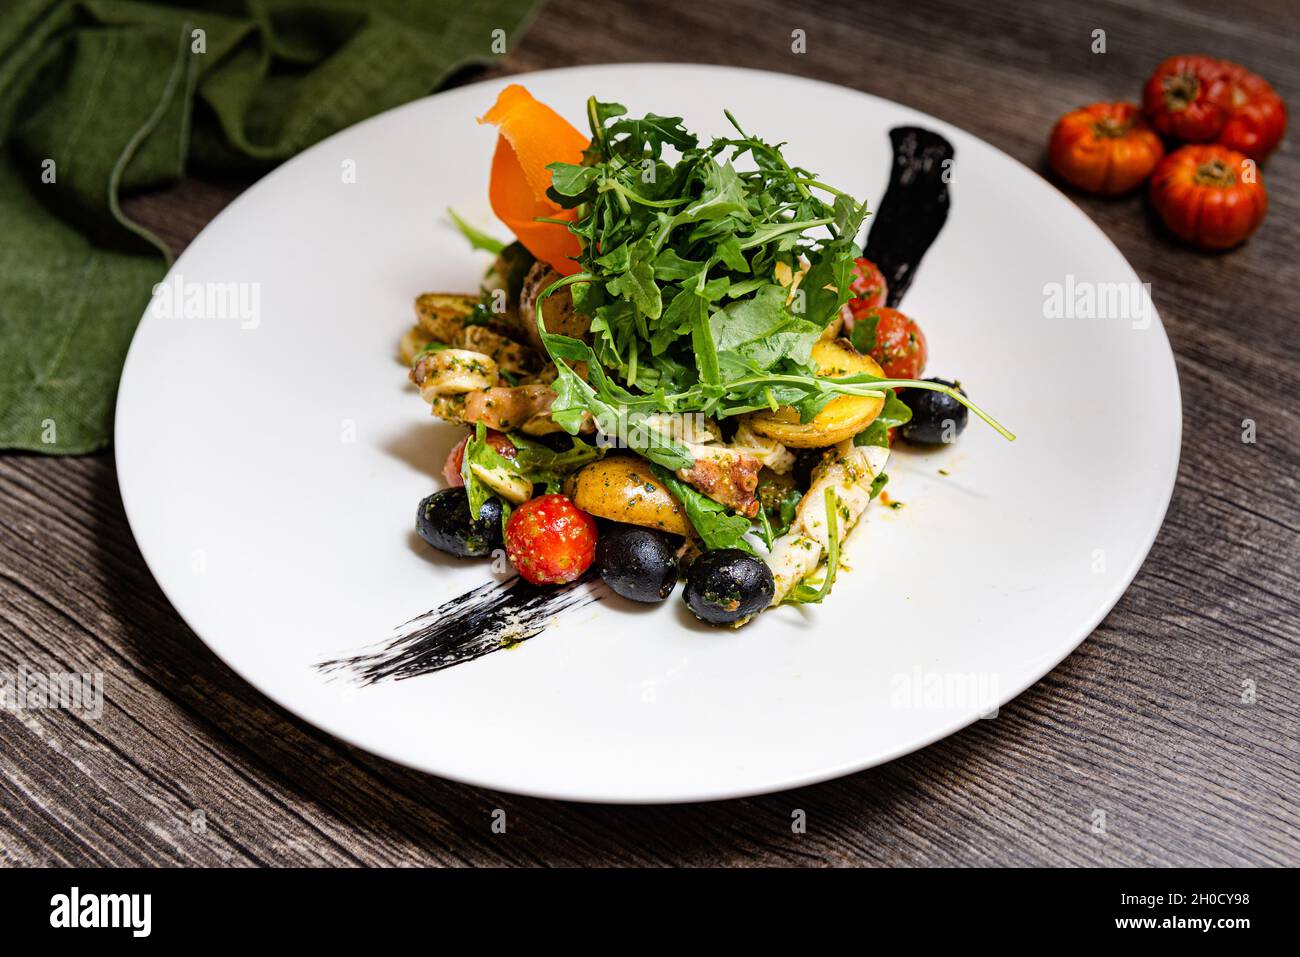 Insalata italiana con polpo in stile ligure. Rucola, olive nere, pomodori ciliegini, tentacoli di polpo, fette di patate novelle, inchiostro seppie. Su un da Foto Stock